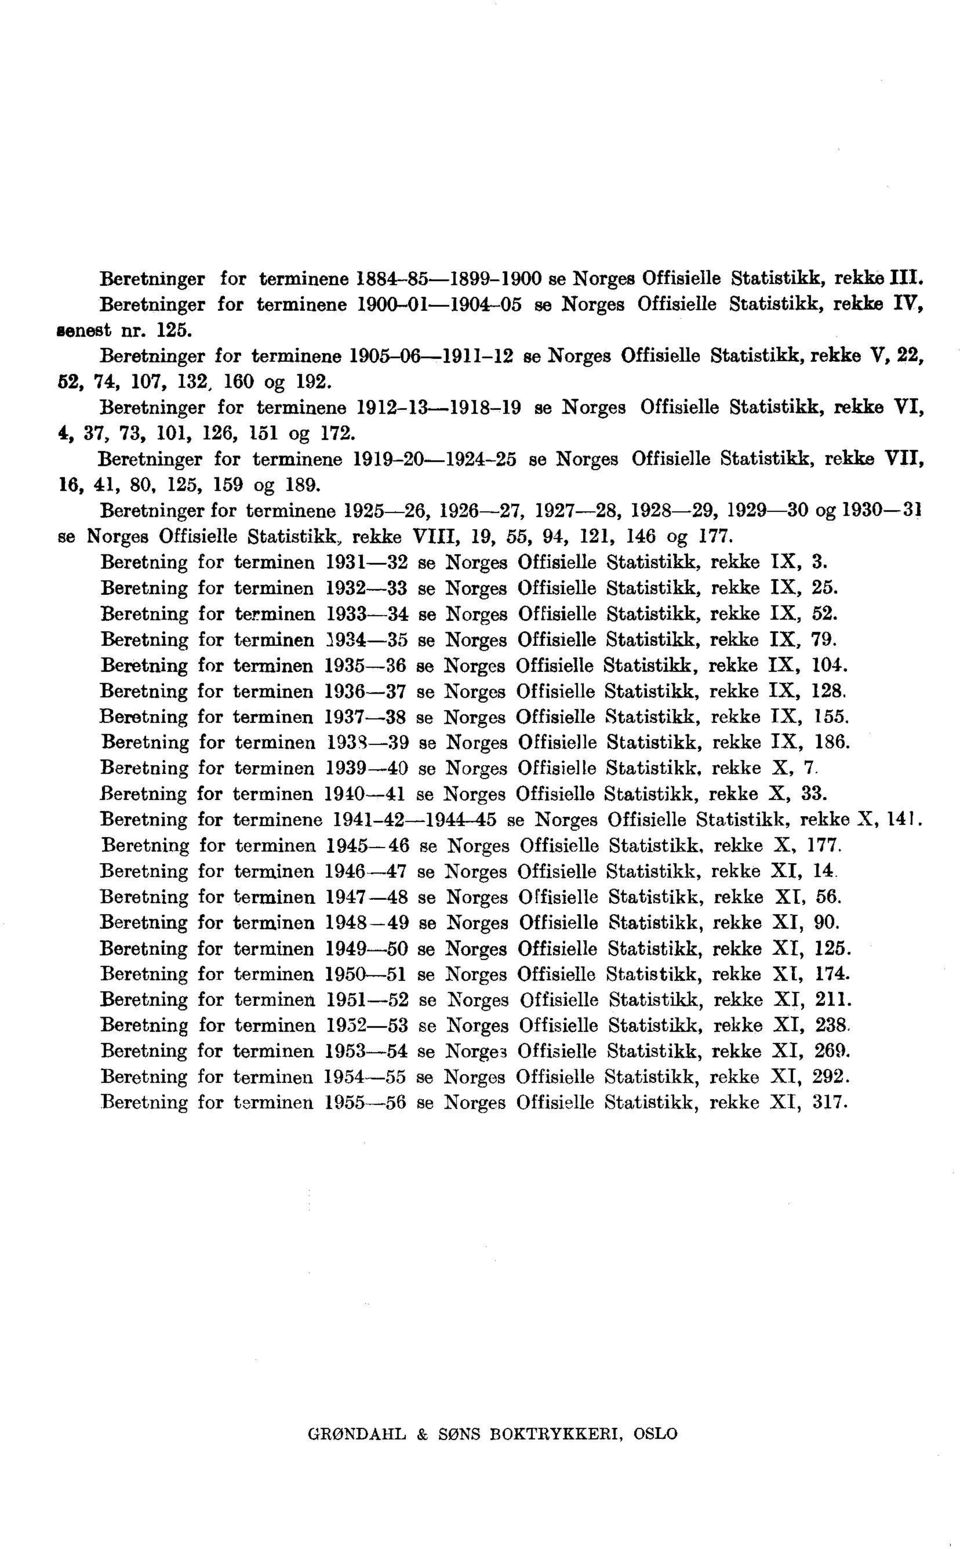 Beretninger for terminene 1912-13-1918-19 se Norges Offisielle Statistikk, rekke VI, 4, 37, 73, 101, 126, 151 og 172.